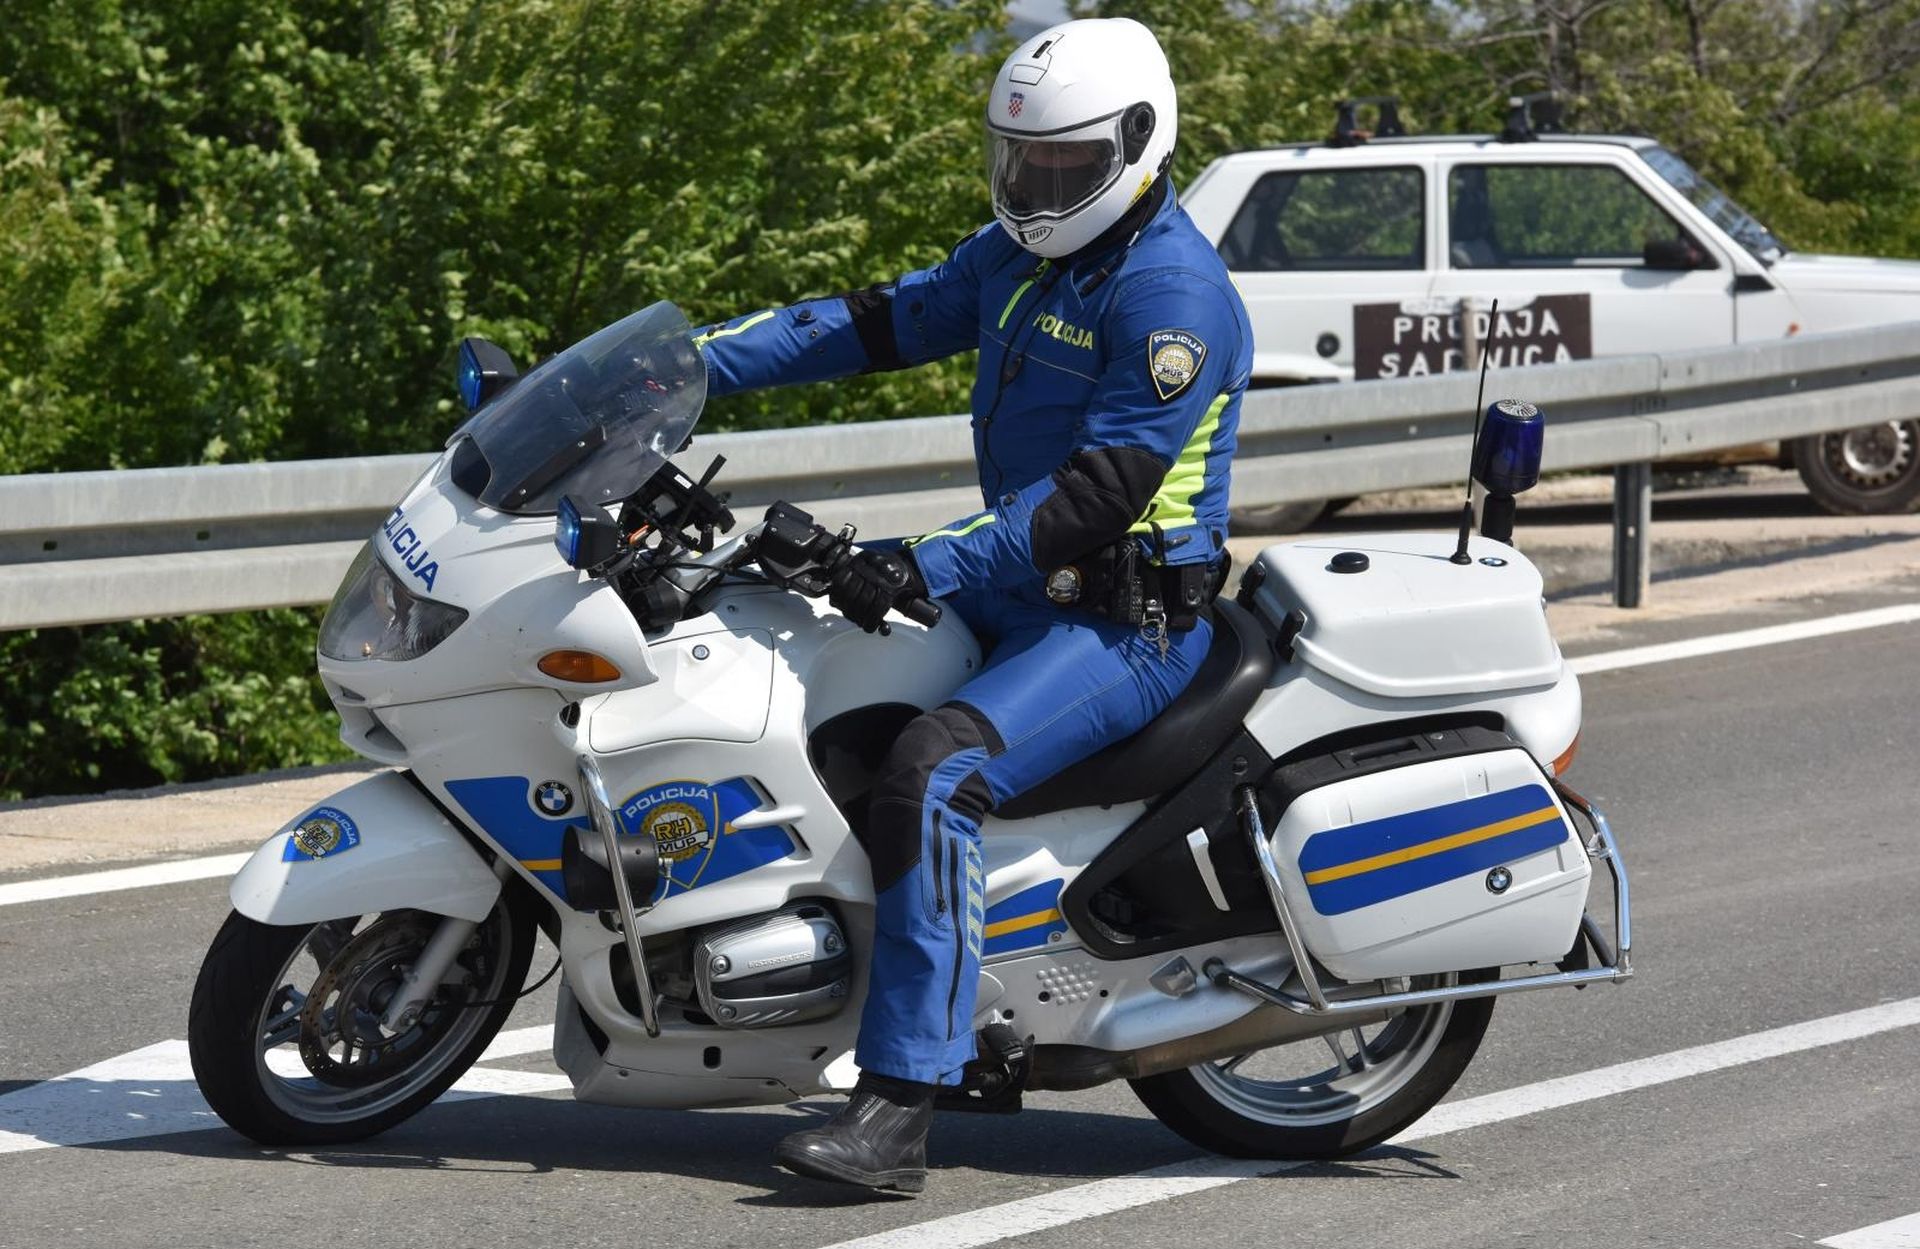 25.04.2017., Sibenik - Policijski sluzbenik na motoru. Photo: Hrvoje Jelavic/PIXSELL